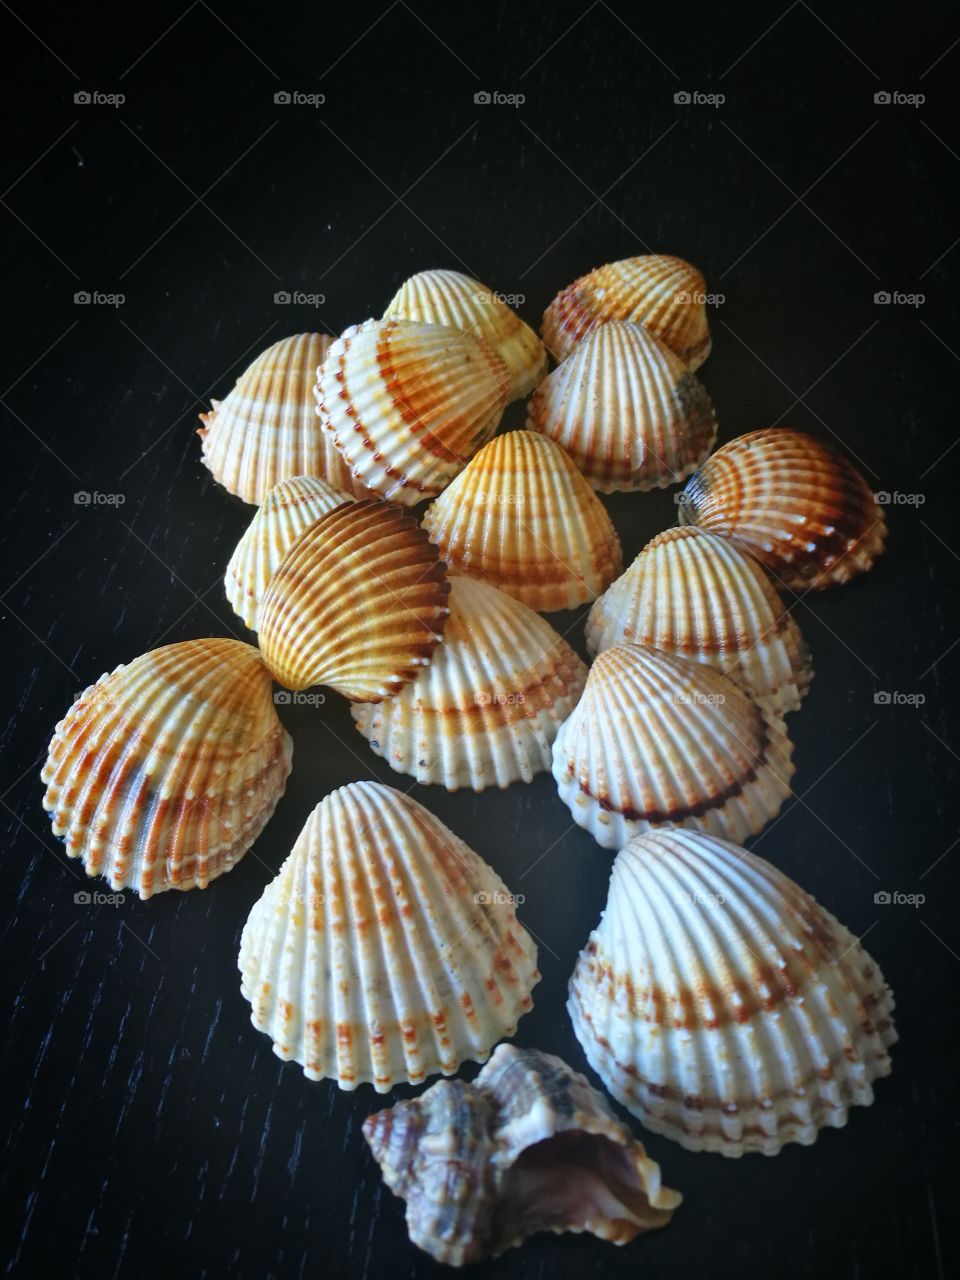 Studio shot of seashell